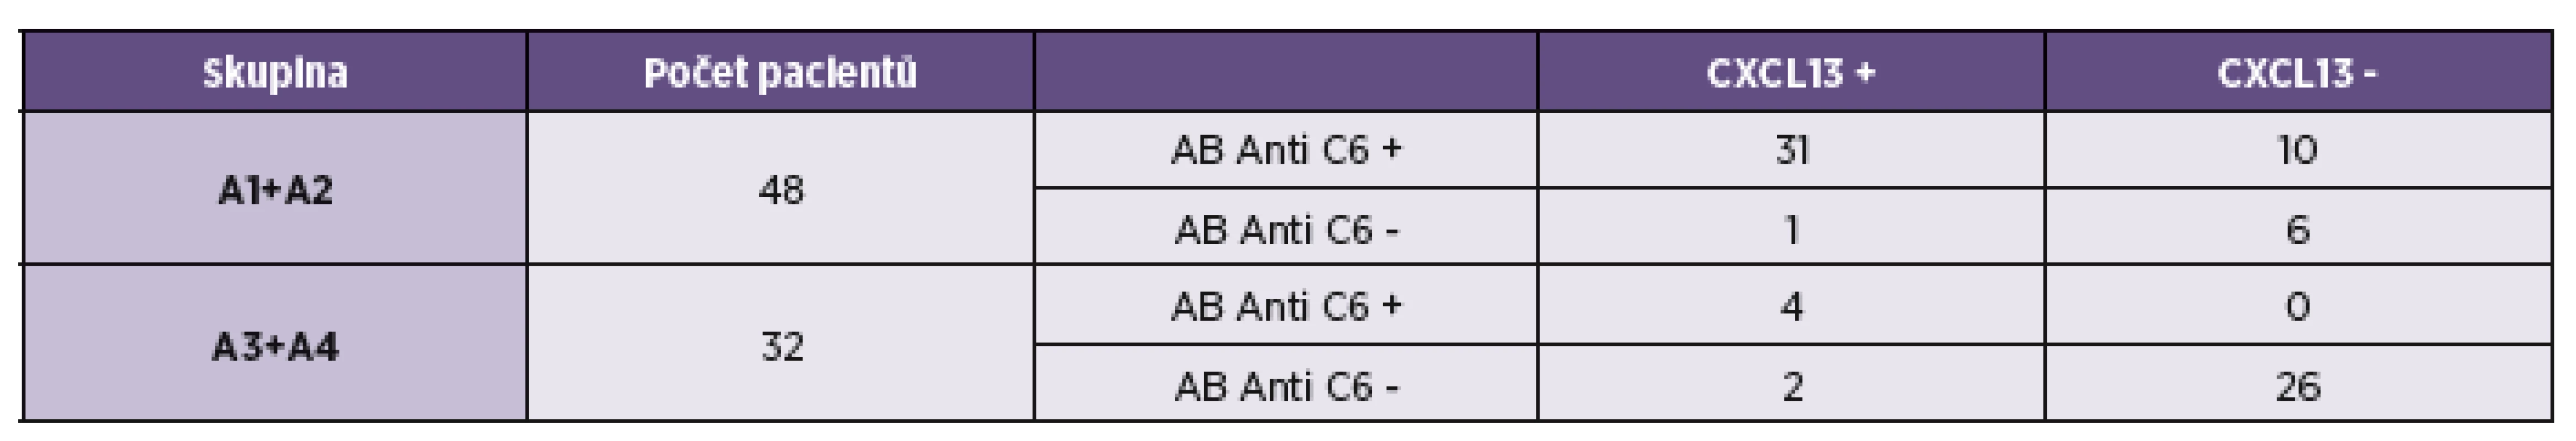 Porovnání vyšetření chemokinu CXCL13 s anti C6 protilátkami v mozkomíšním moku u pacientů s pozitivním a negativním protilátkovým indexem
Table 3. Comparison of the detection of CXCL13 chemokine and antibodies to the C6 peptide in CSF of patients with positive and negative antibody index